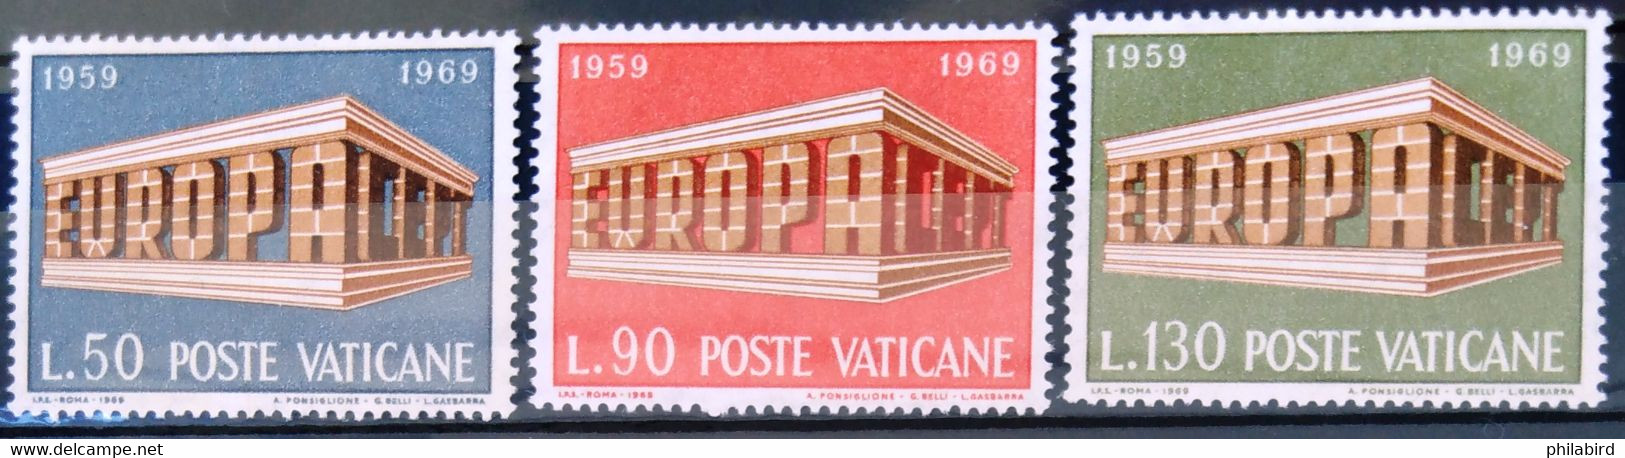 EUROPA 1969 - VATICAN                  N° 488/490                    NEUF* - 1969